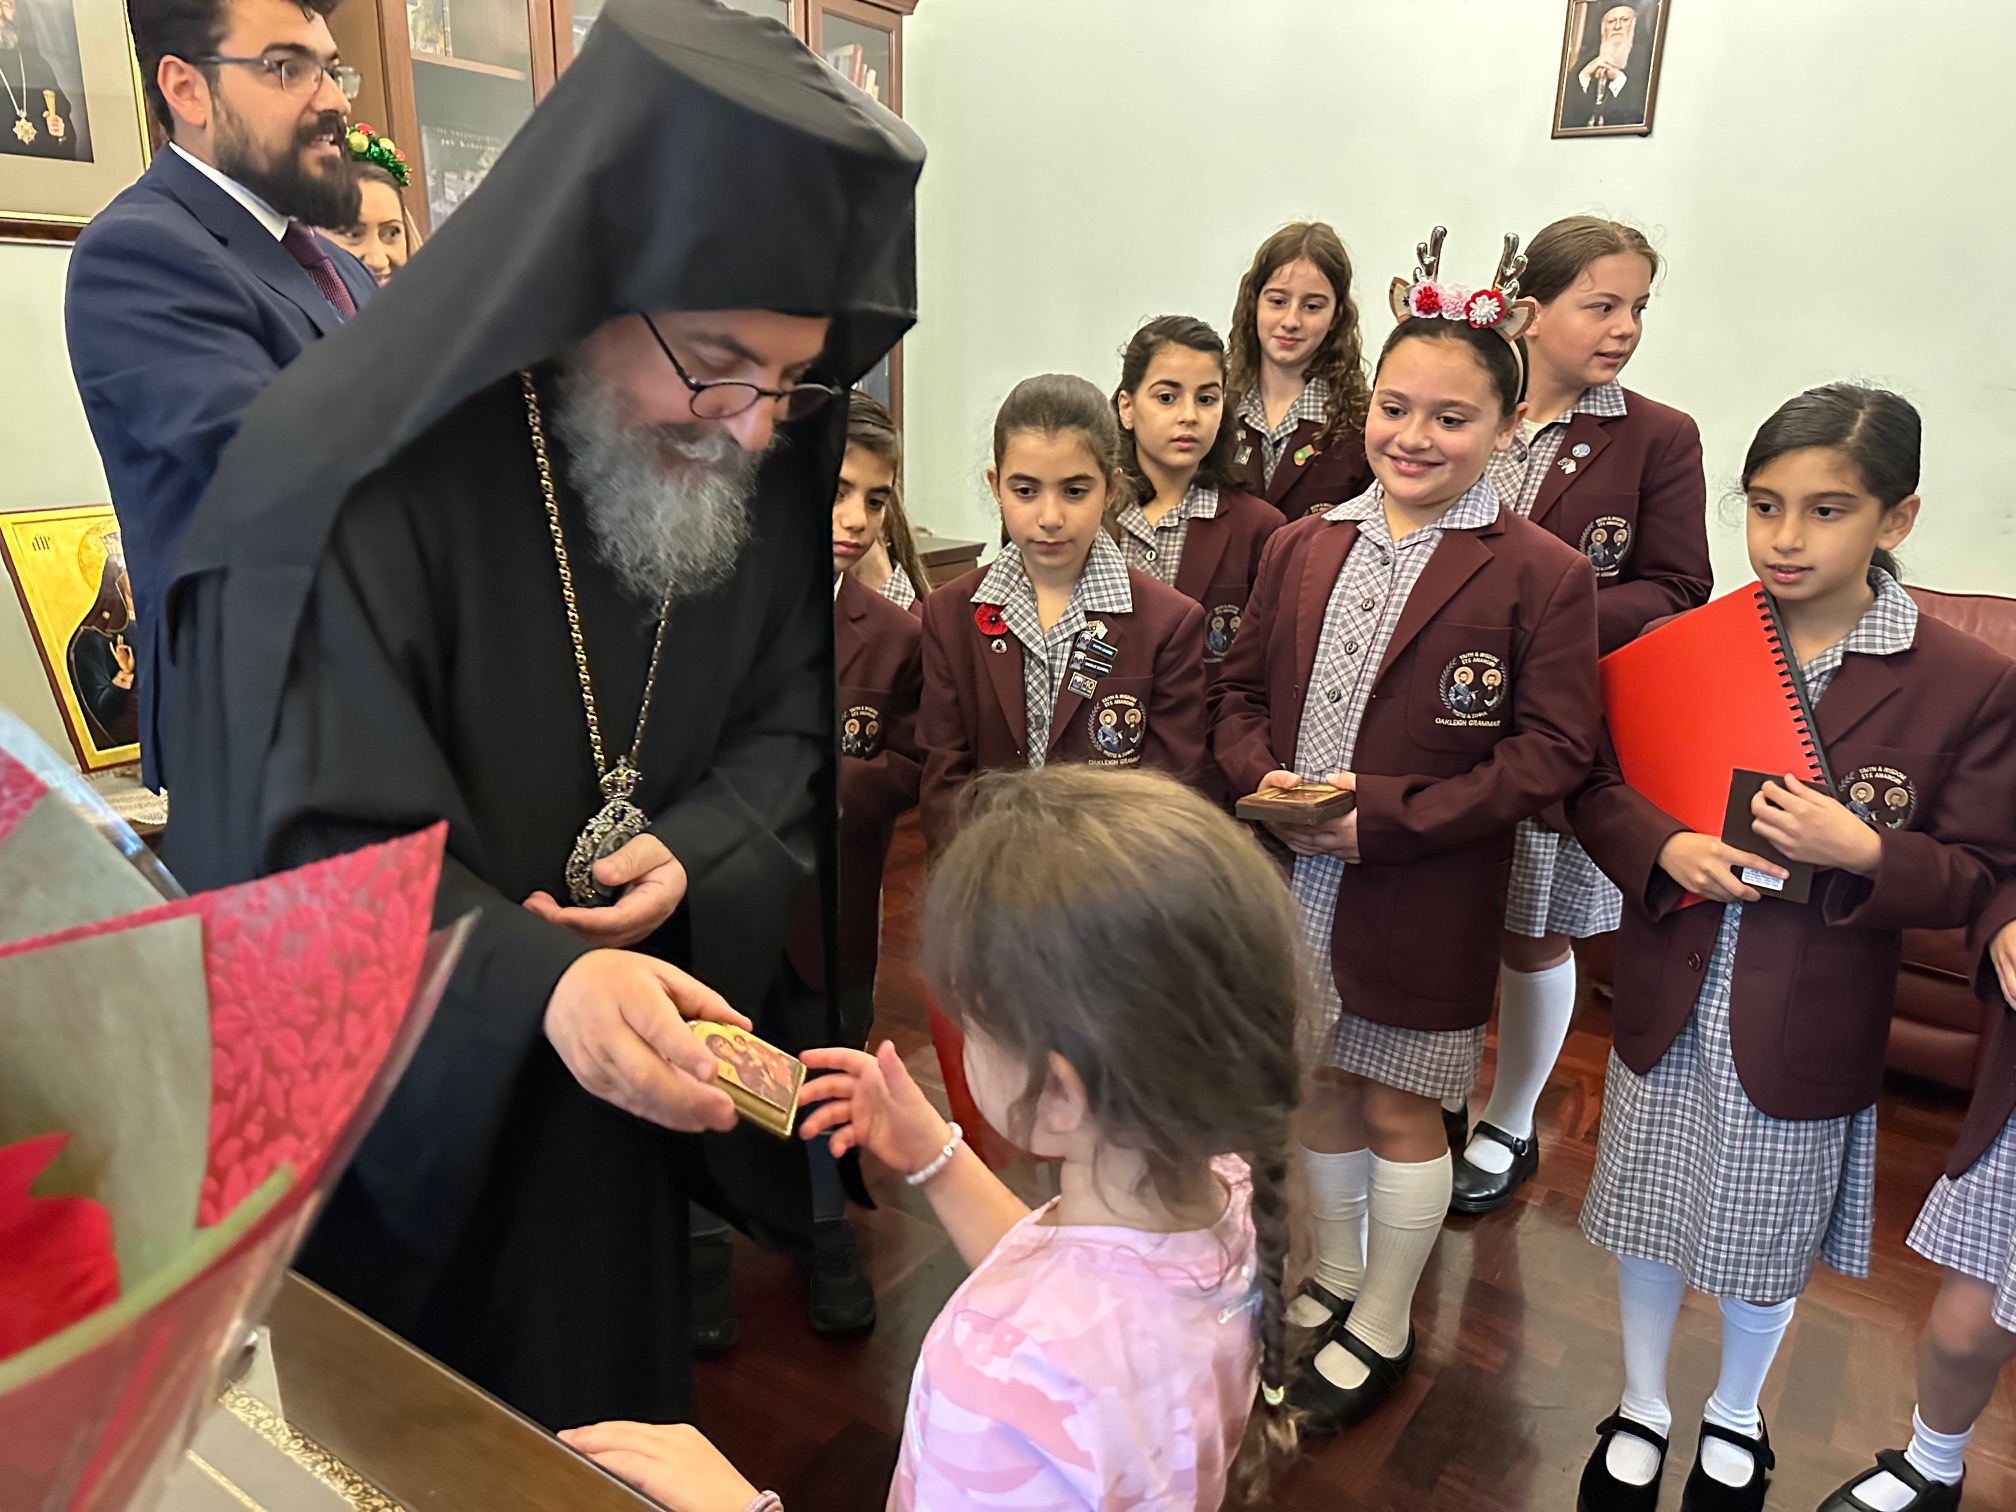 Μαθητές και μαθήτριες του Oakleigh Grammar έψαλαν παραδοσιακά κάλαντα της Χίου στον Επίσκοπο Σωζοπόλεως